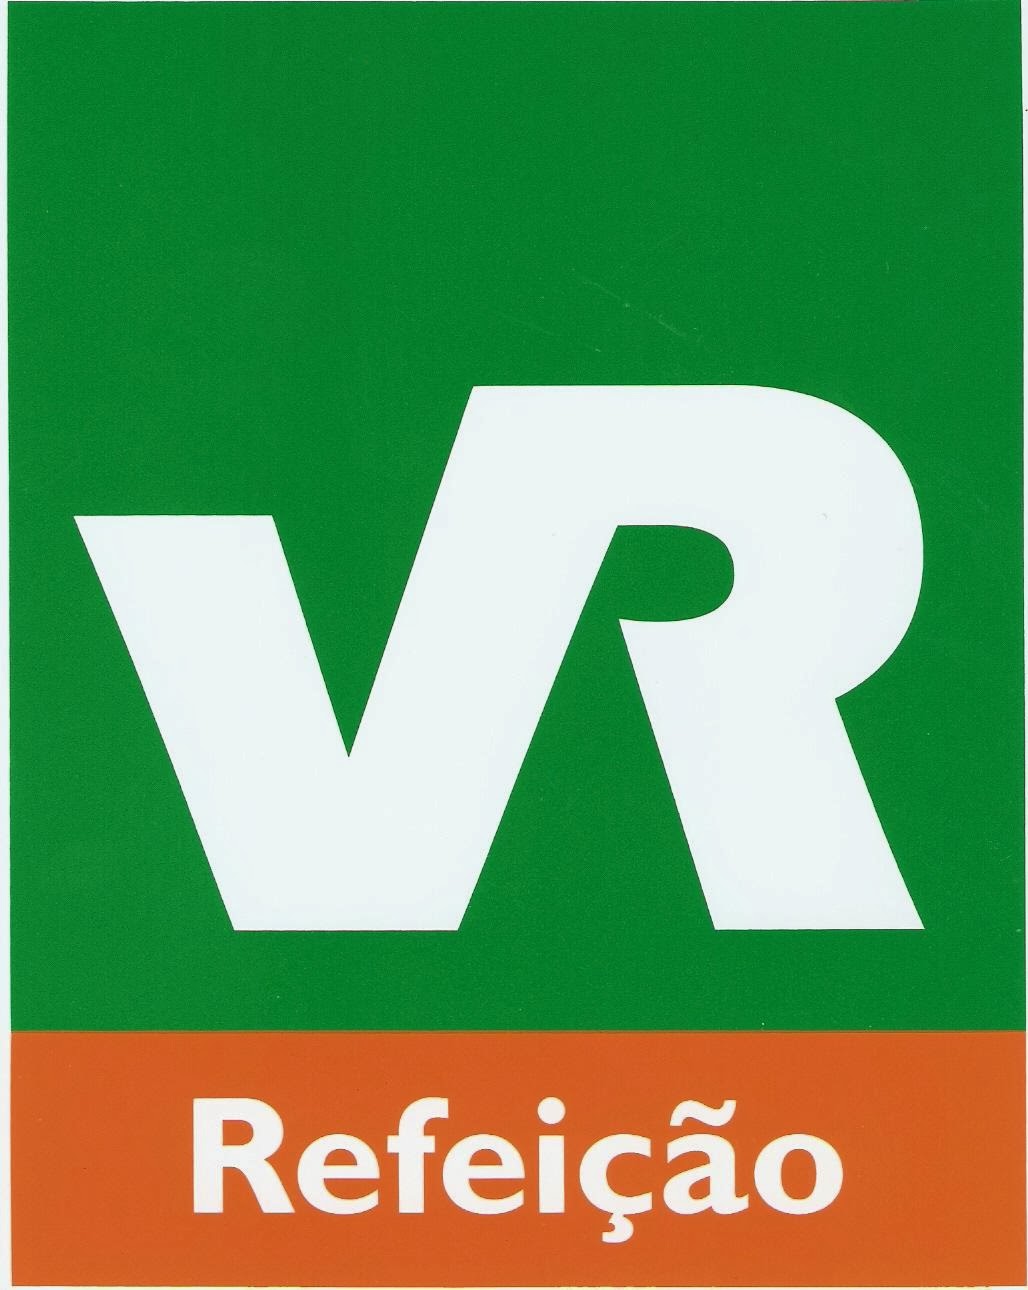  VR - Vale Refeição 